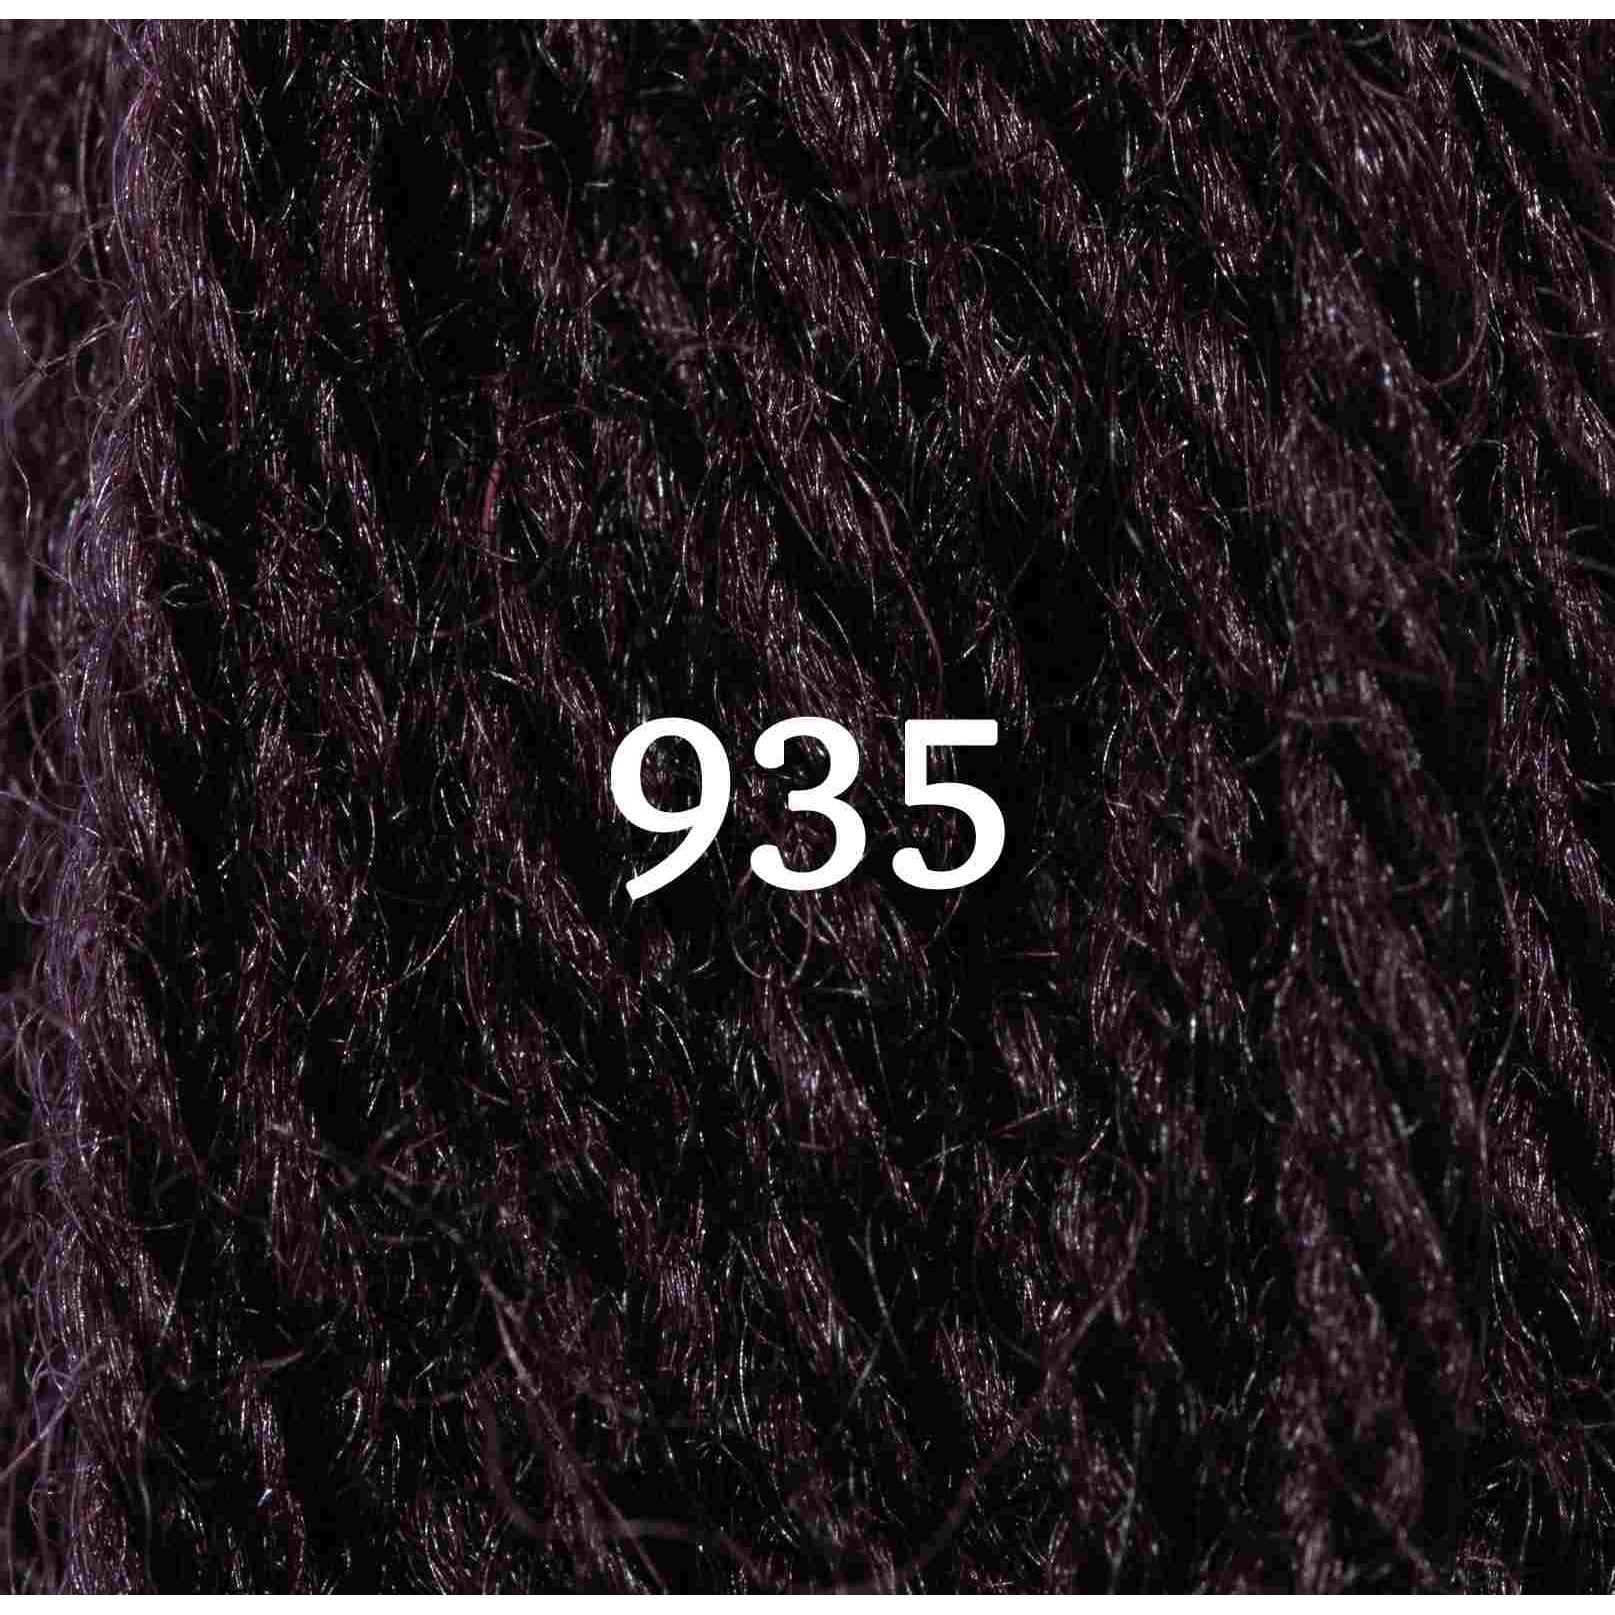 Appletons Dull Rose Pink Wool Yarn 141-149